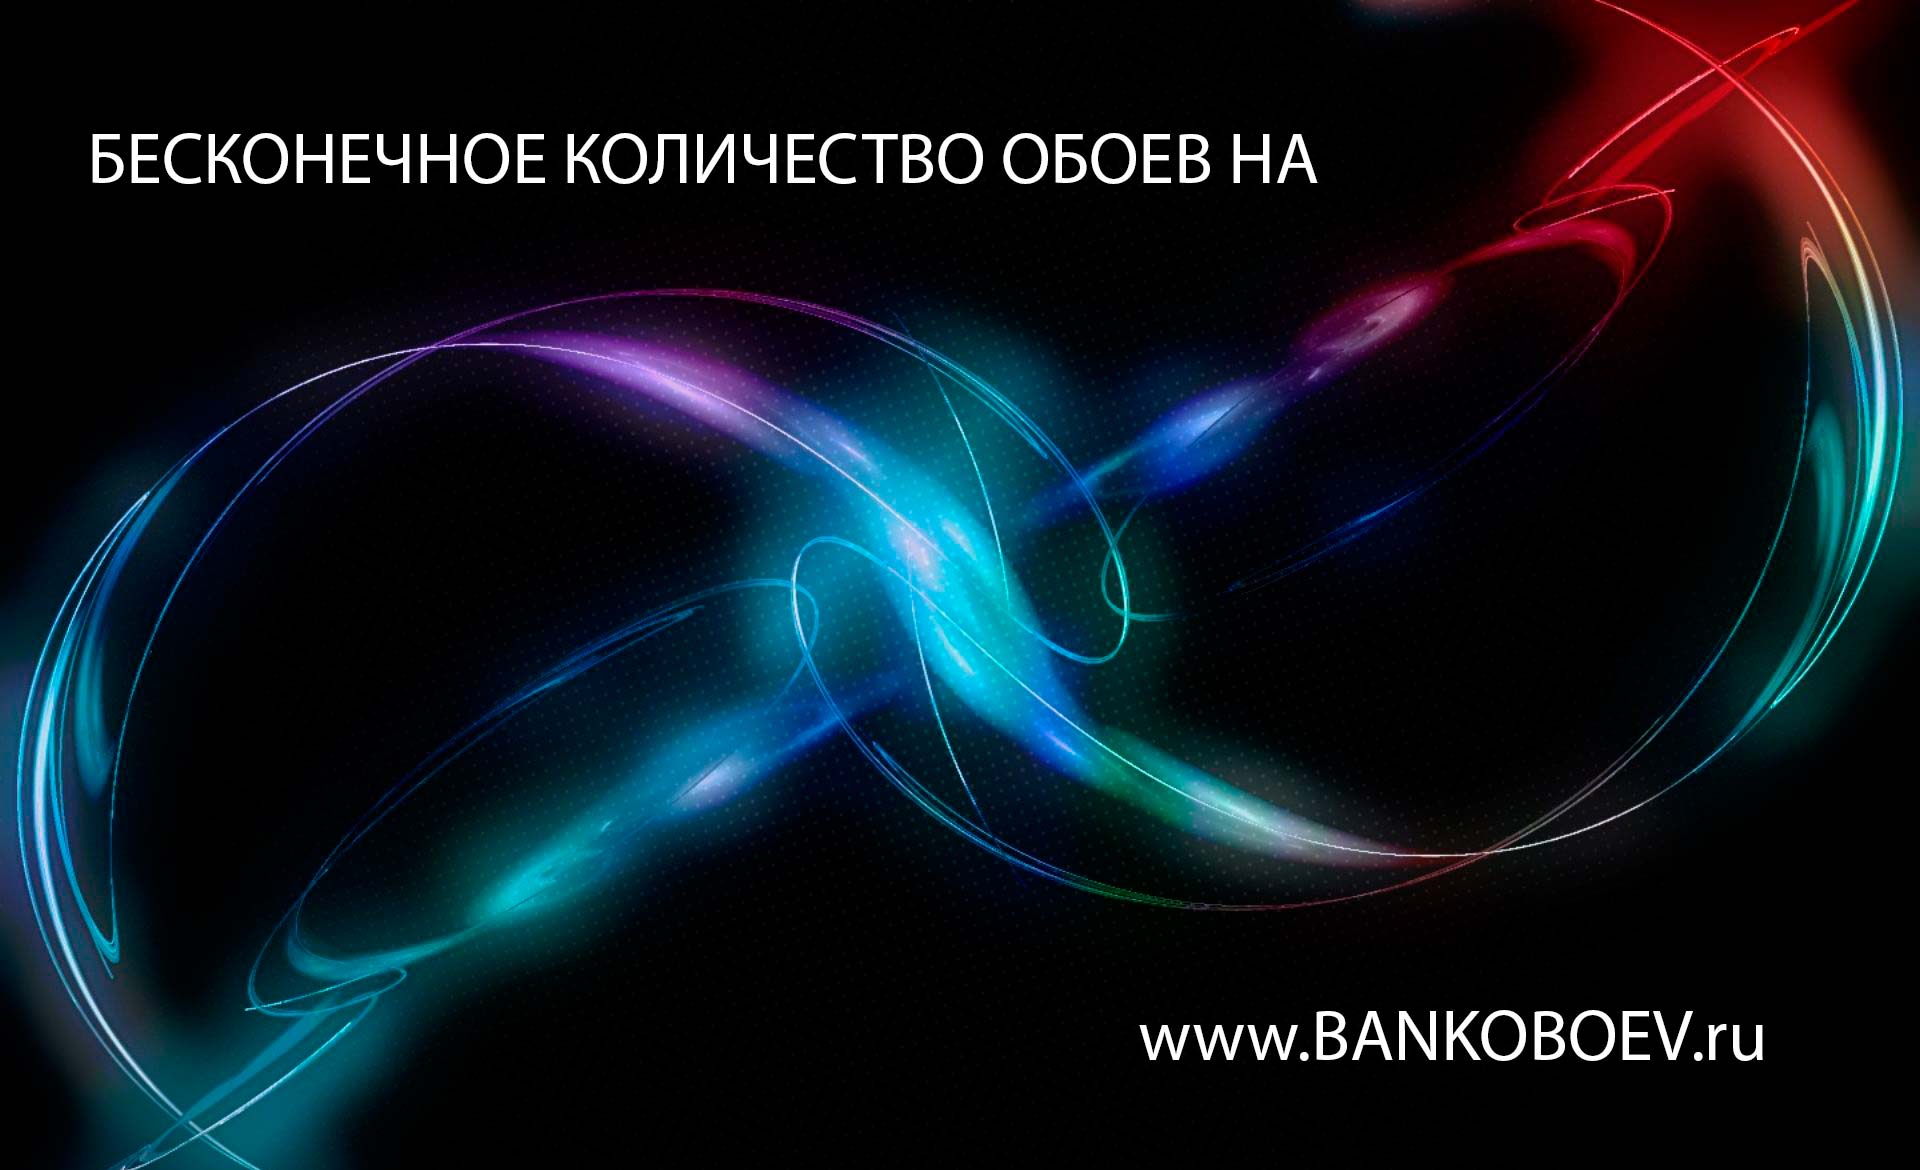 Source Bankoboev Ru Image Mjc3ntm4